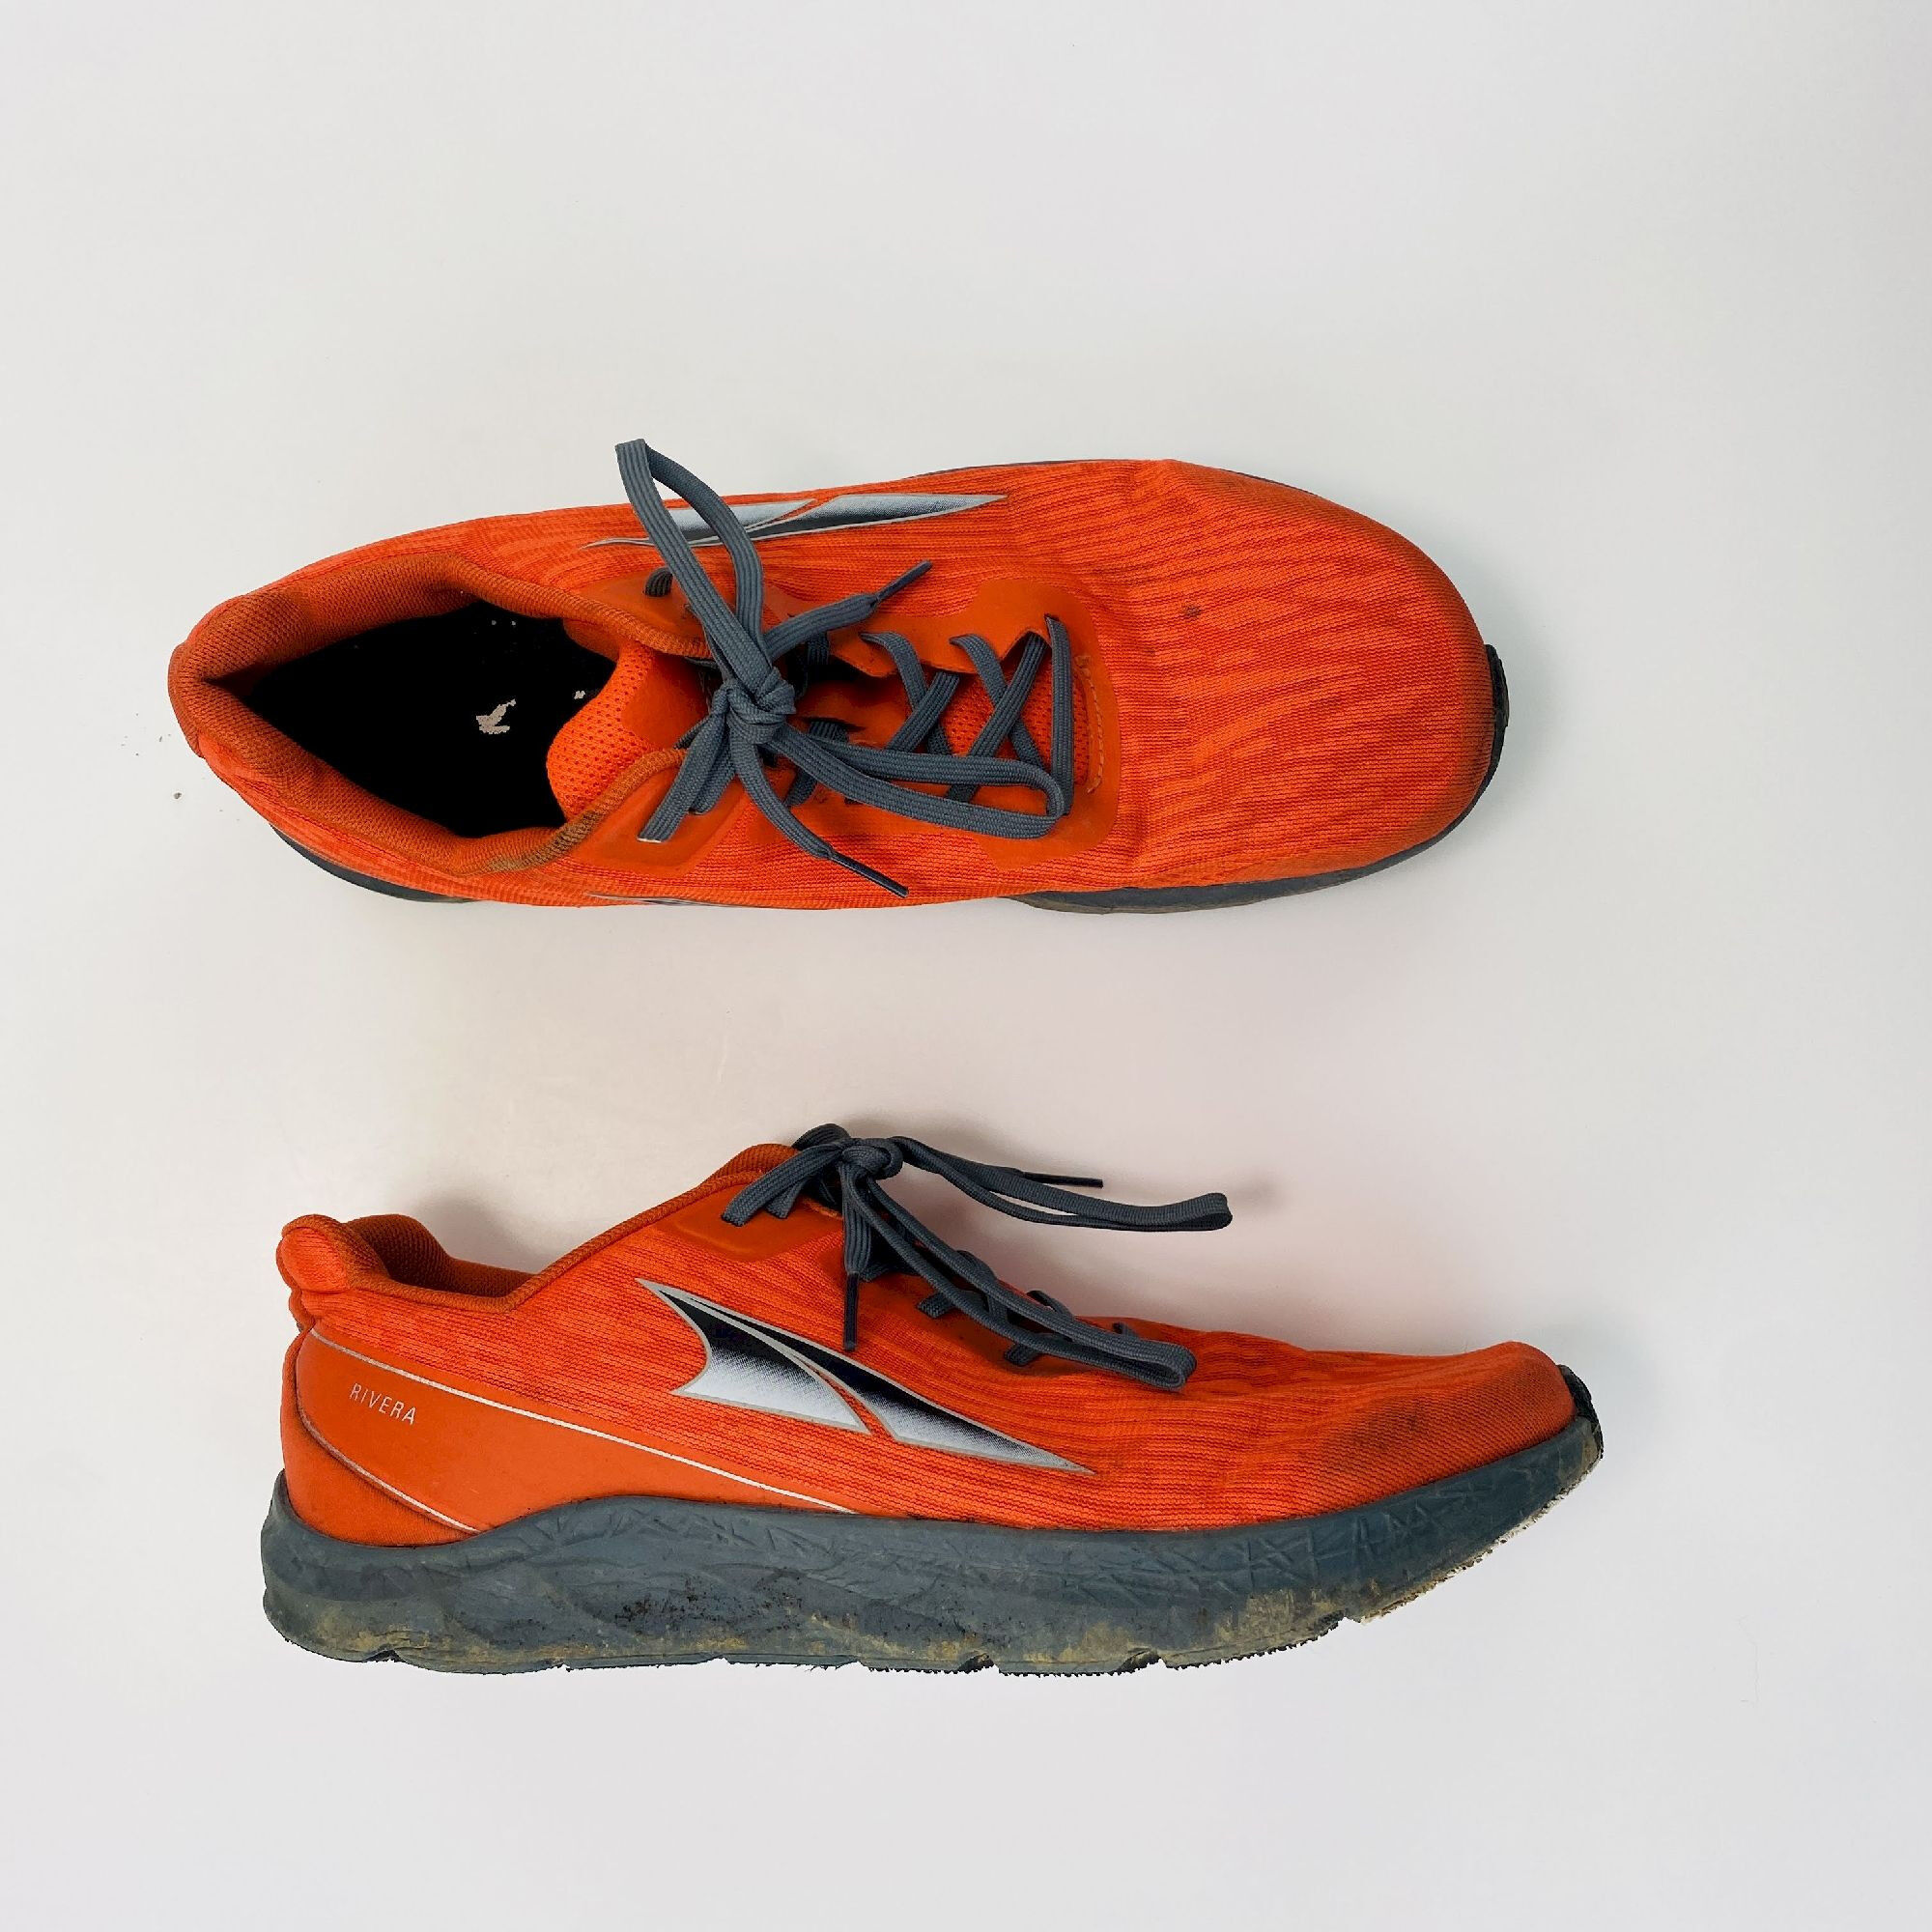 Altra Rivera - Second Hand Buty trailowe meskie - Pomarańczowy - 44.5 | Hardloop